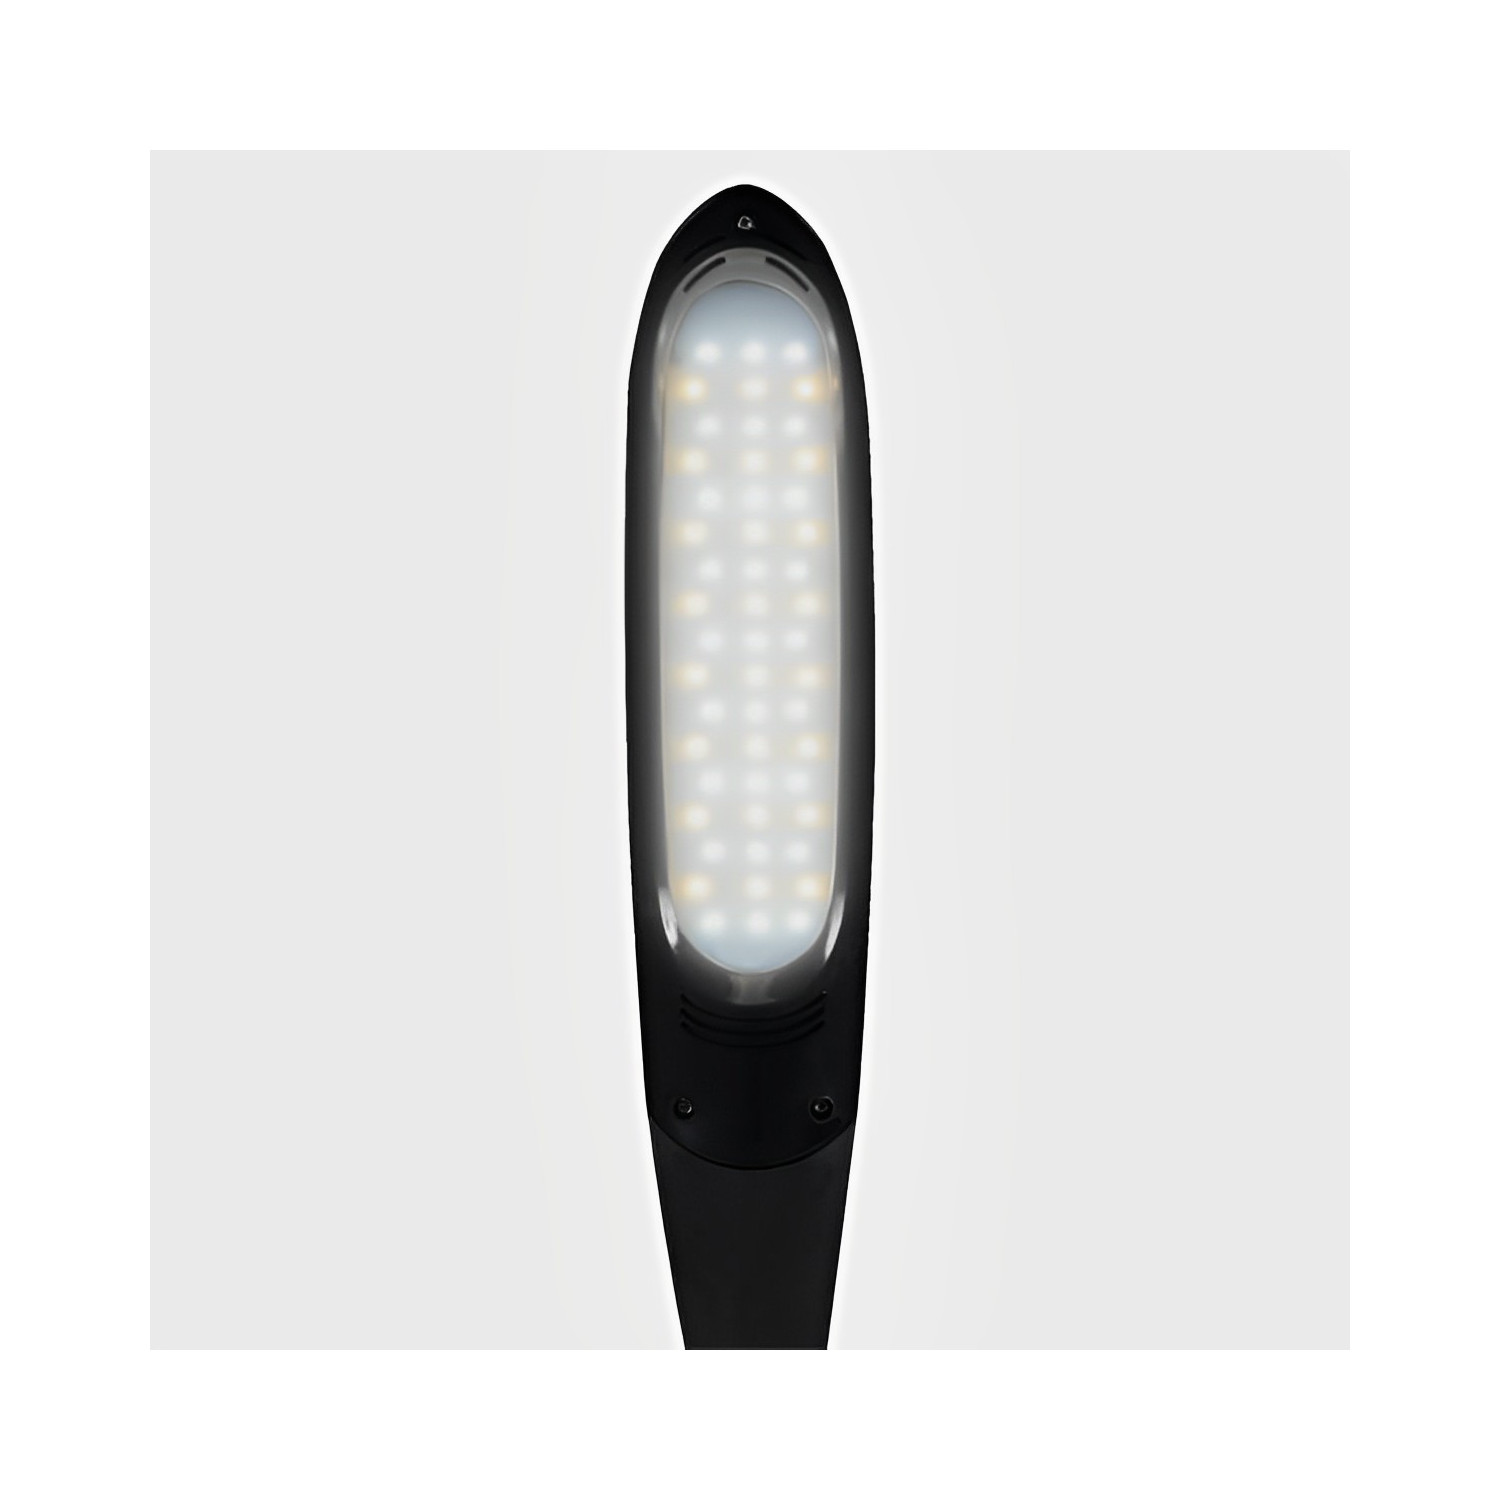 Lampe de travail LED anti-éblouissement - Eclairage